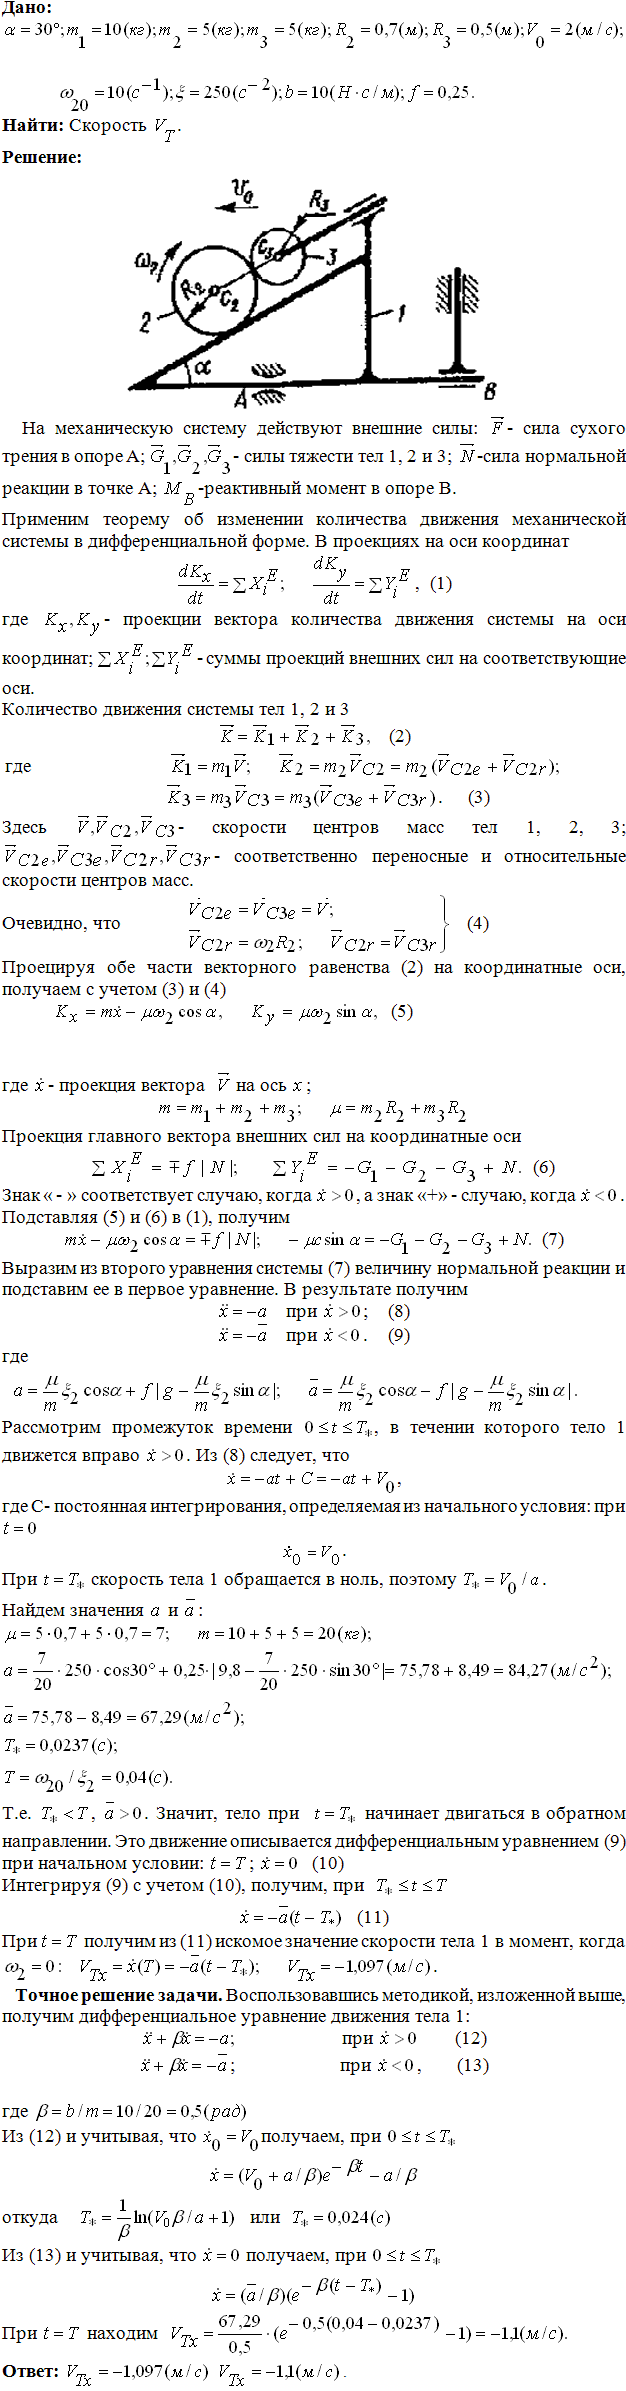 Яблонский задание Д8..., Задача 14812, Теоретическая механика